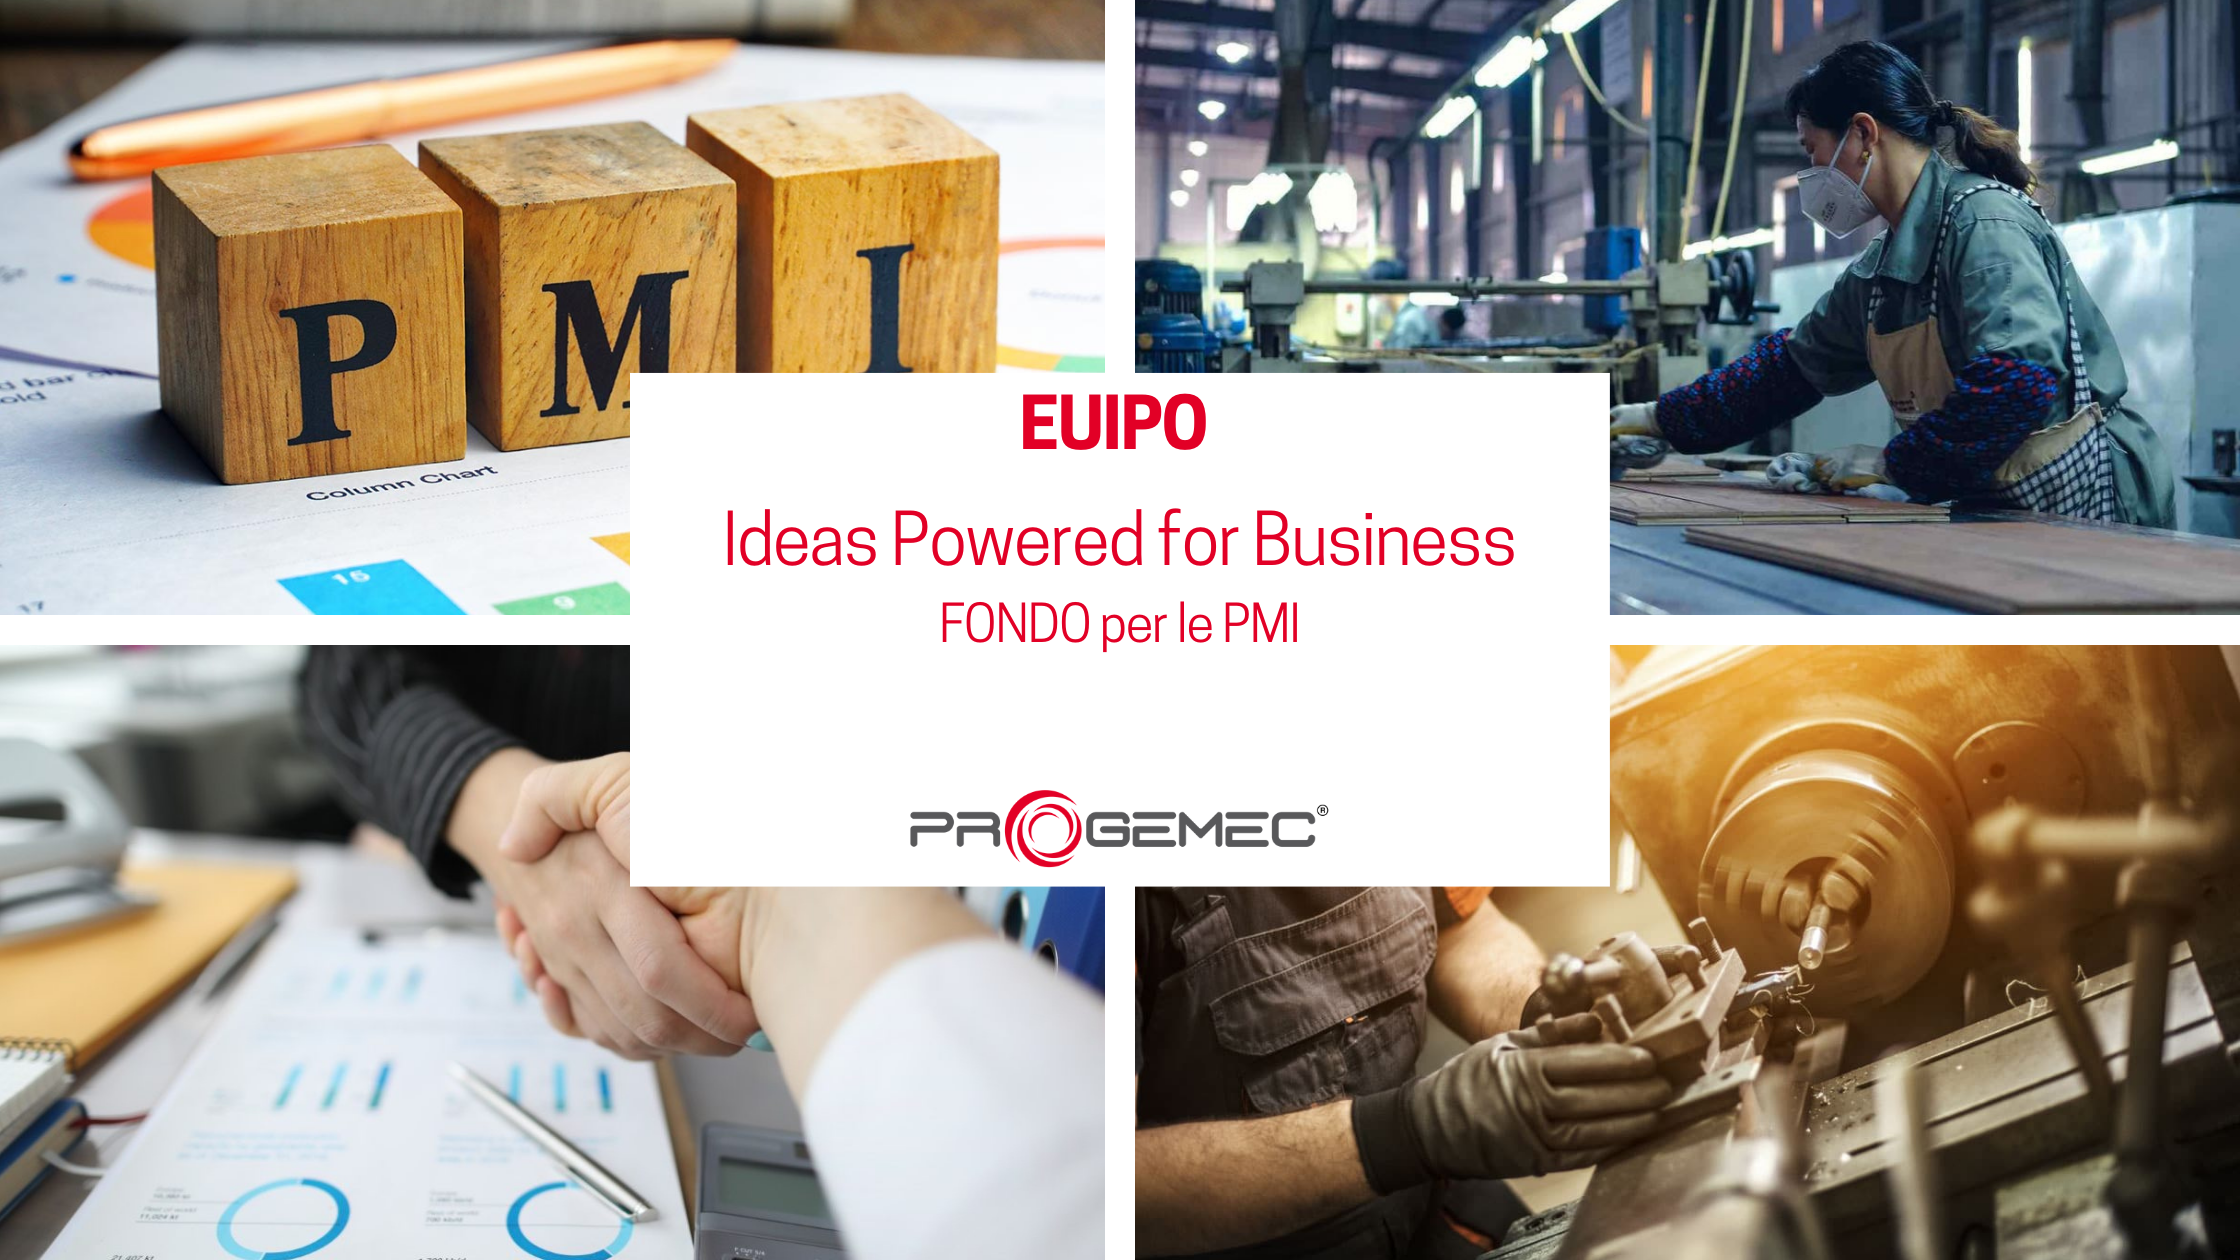 EUIPO - Il fondo per le PMI dell’iniziativa Ideas Powered for Business